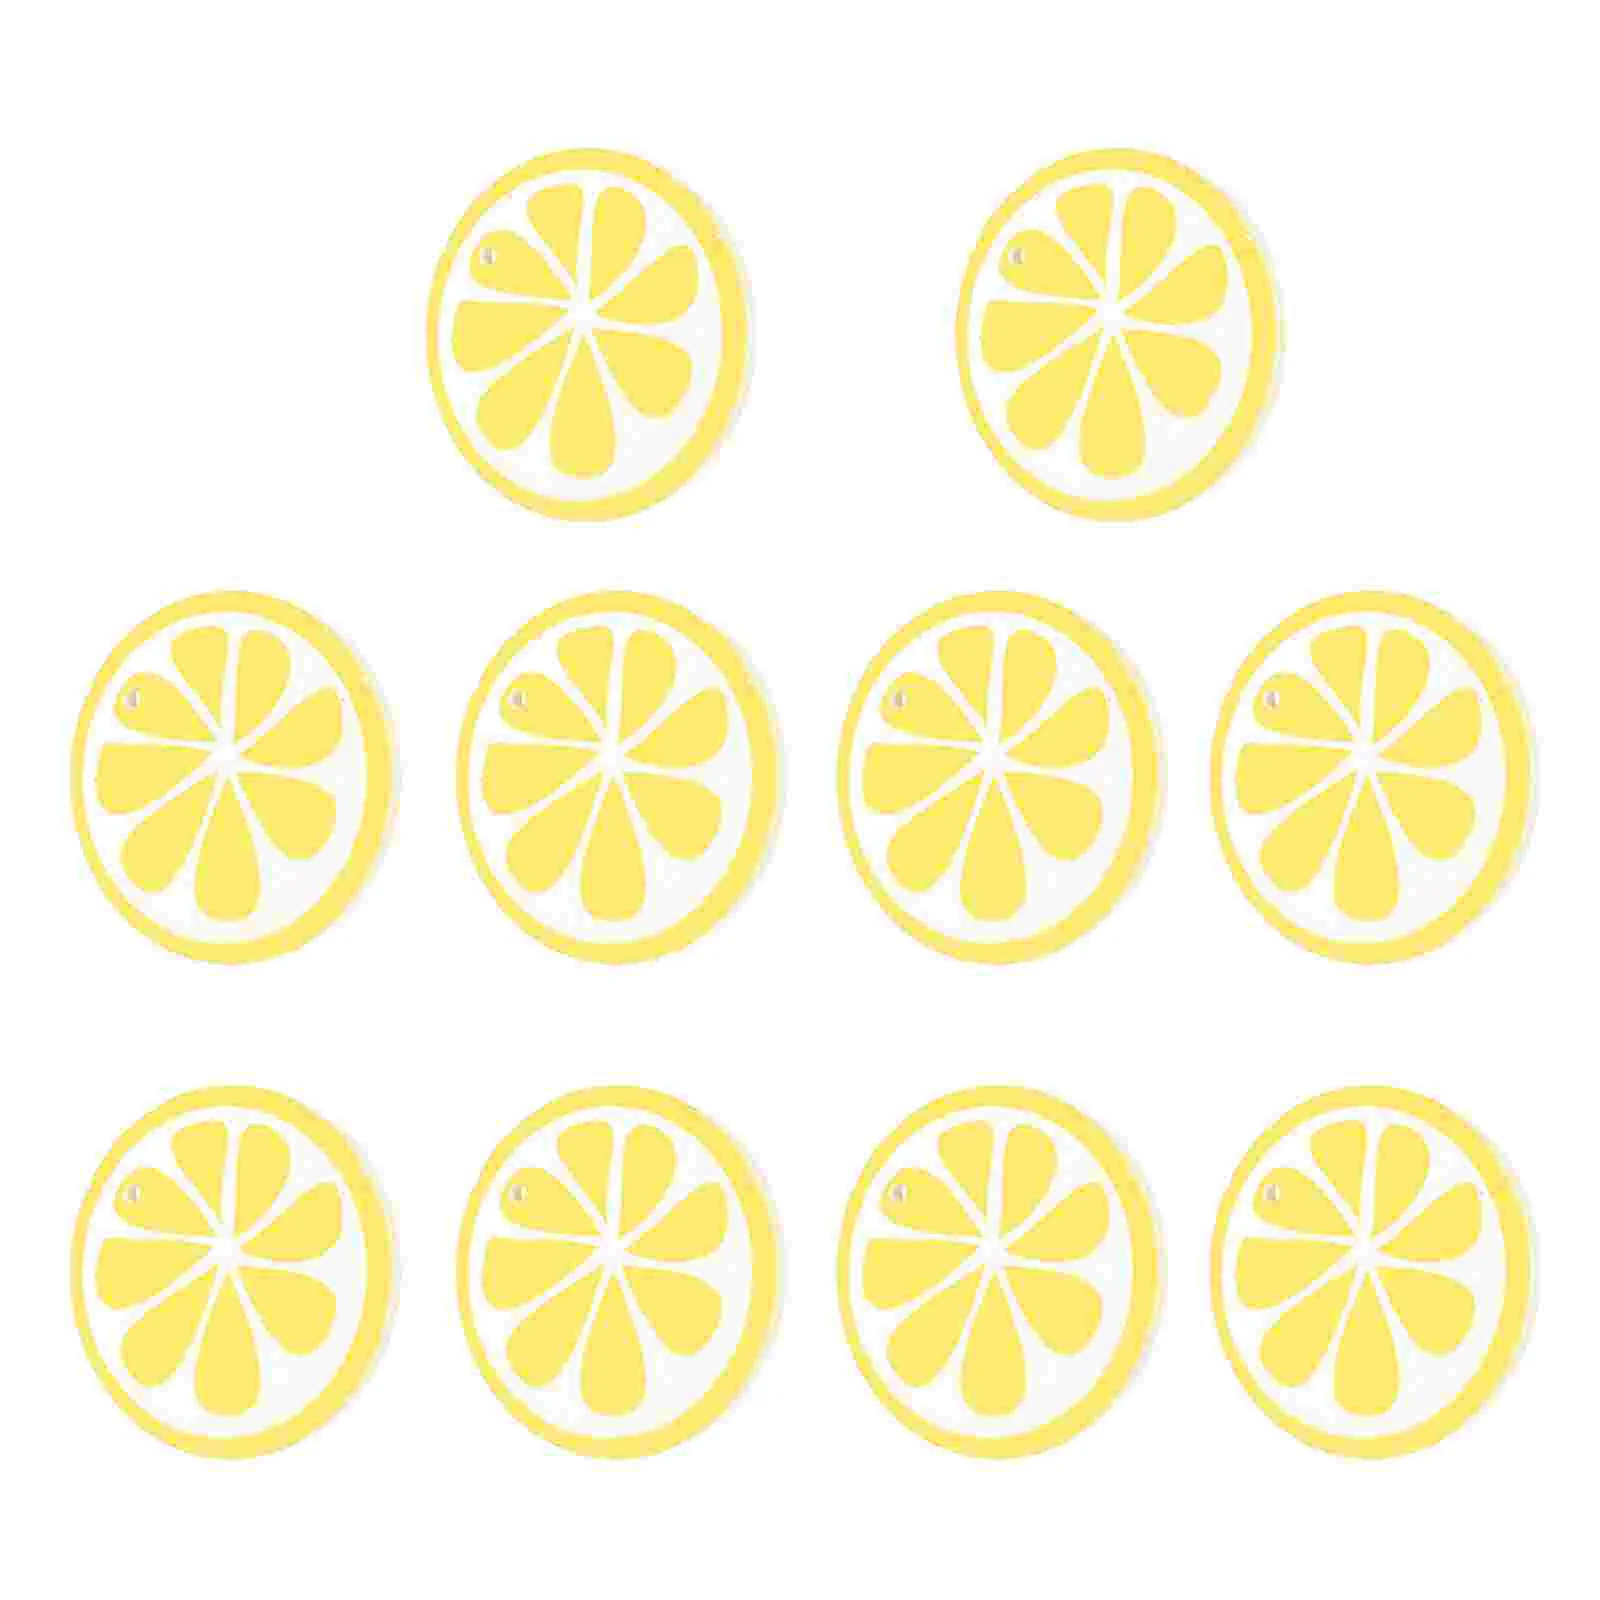 

10 Pcs Lemon Wood Pieces Plaques Round Slices Letter Decor Summer Hanging Fruit Chips Artificial Lemons Crafts Rounds